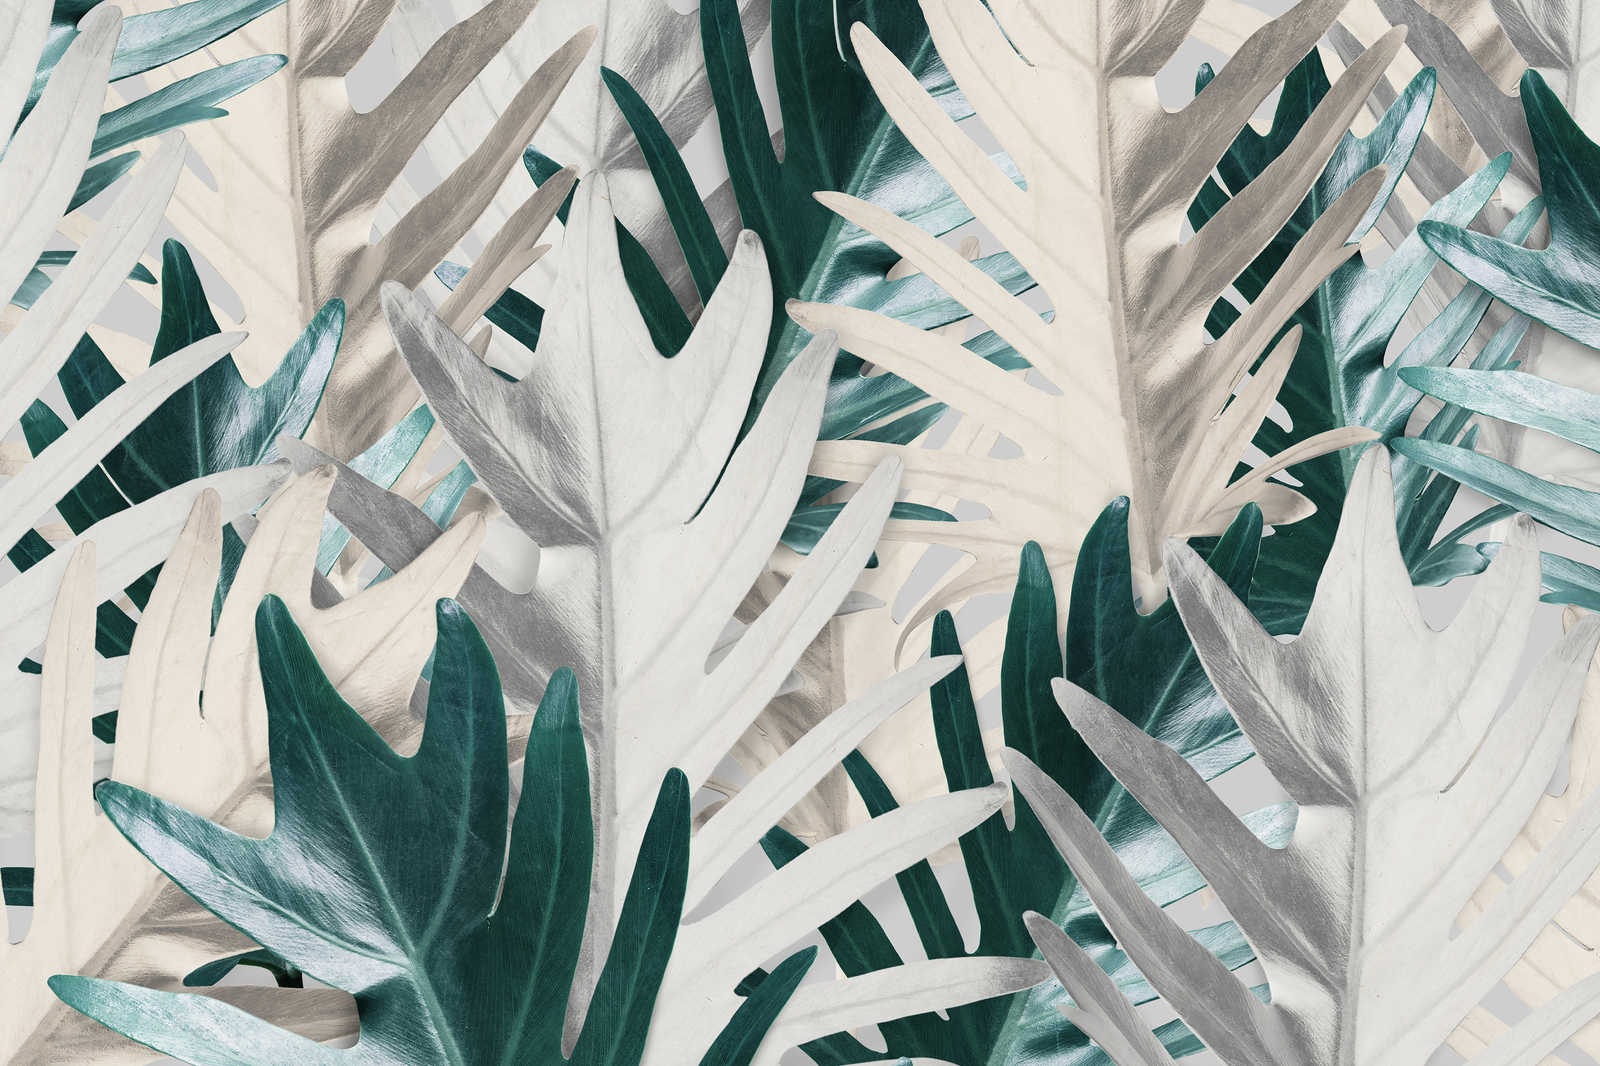             Cuadro en lienzo con hojas de palmera tropical - 0,90 m x 0,60 m
        